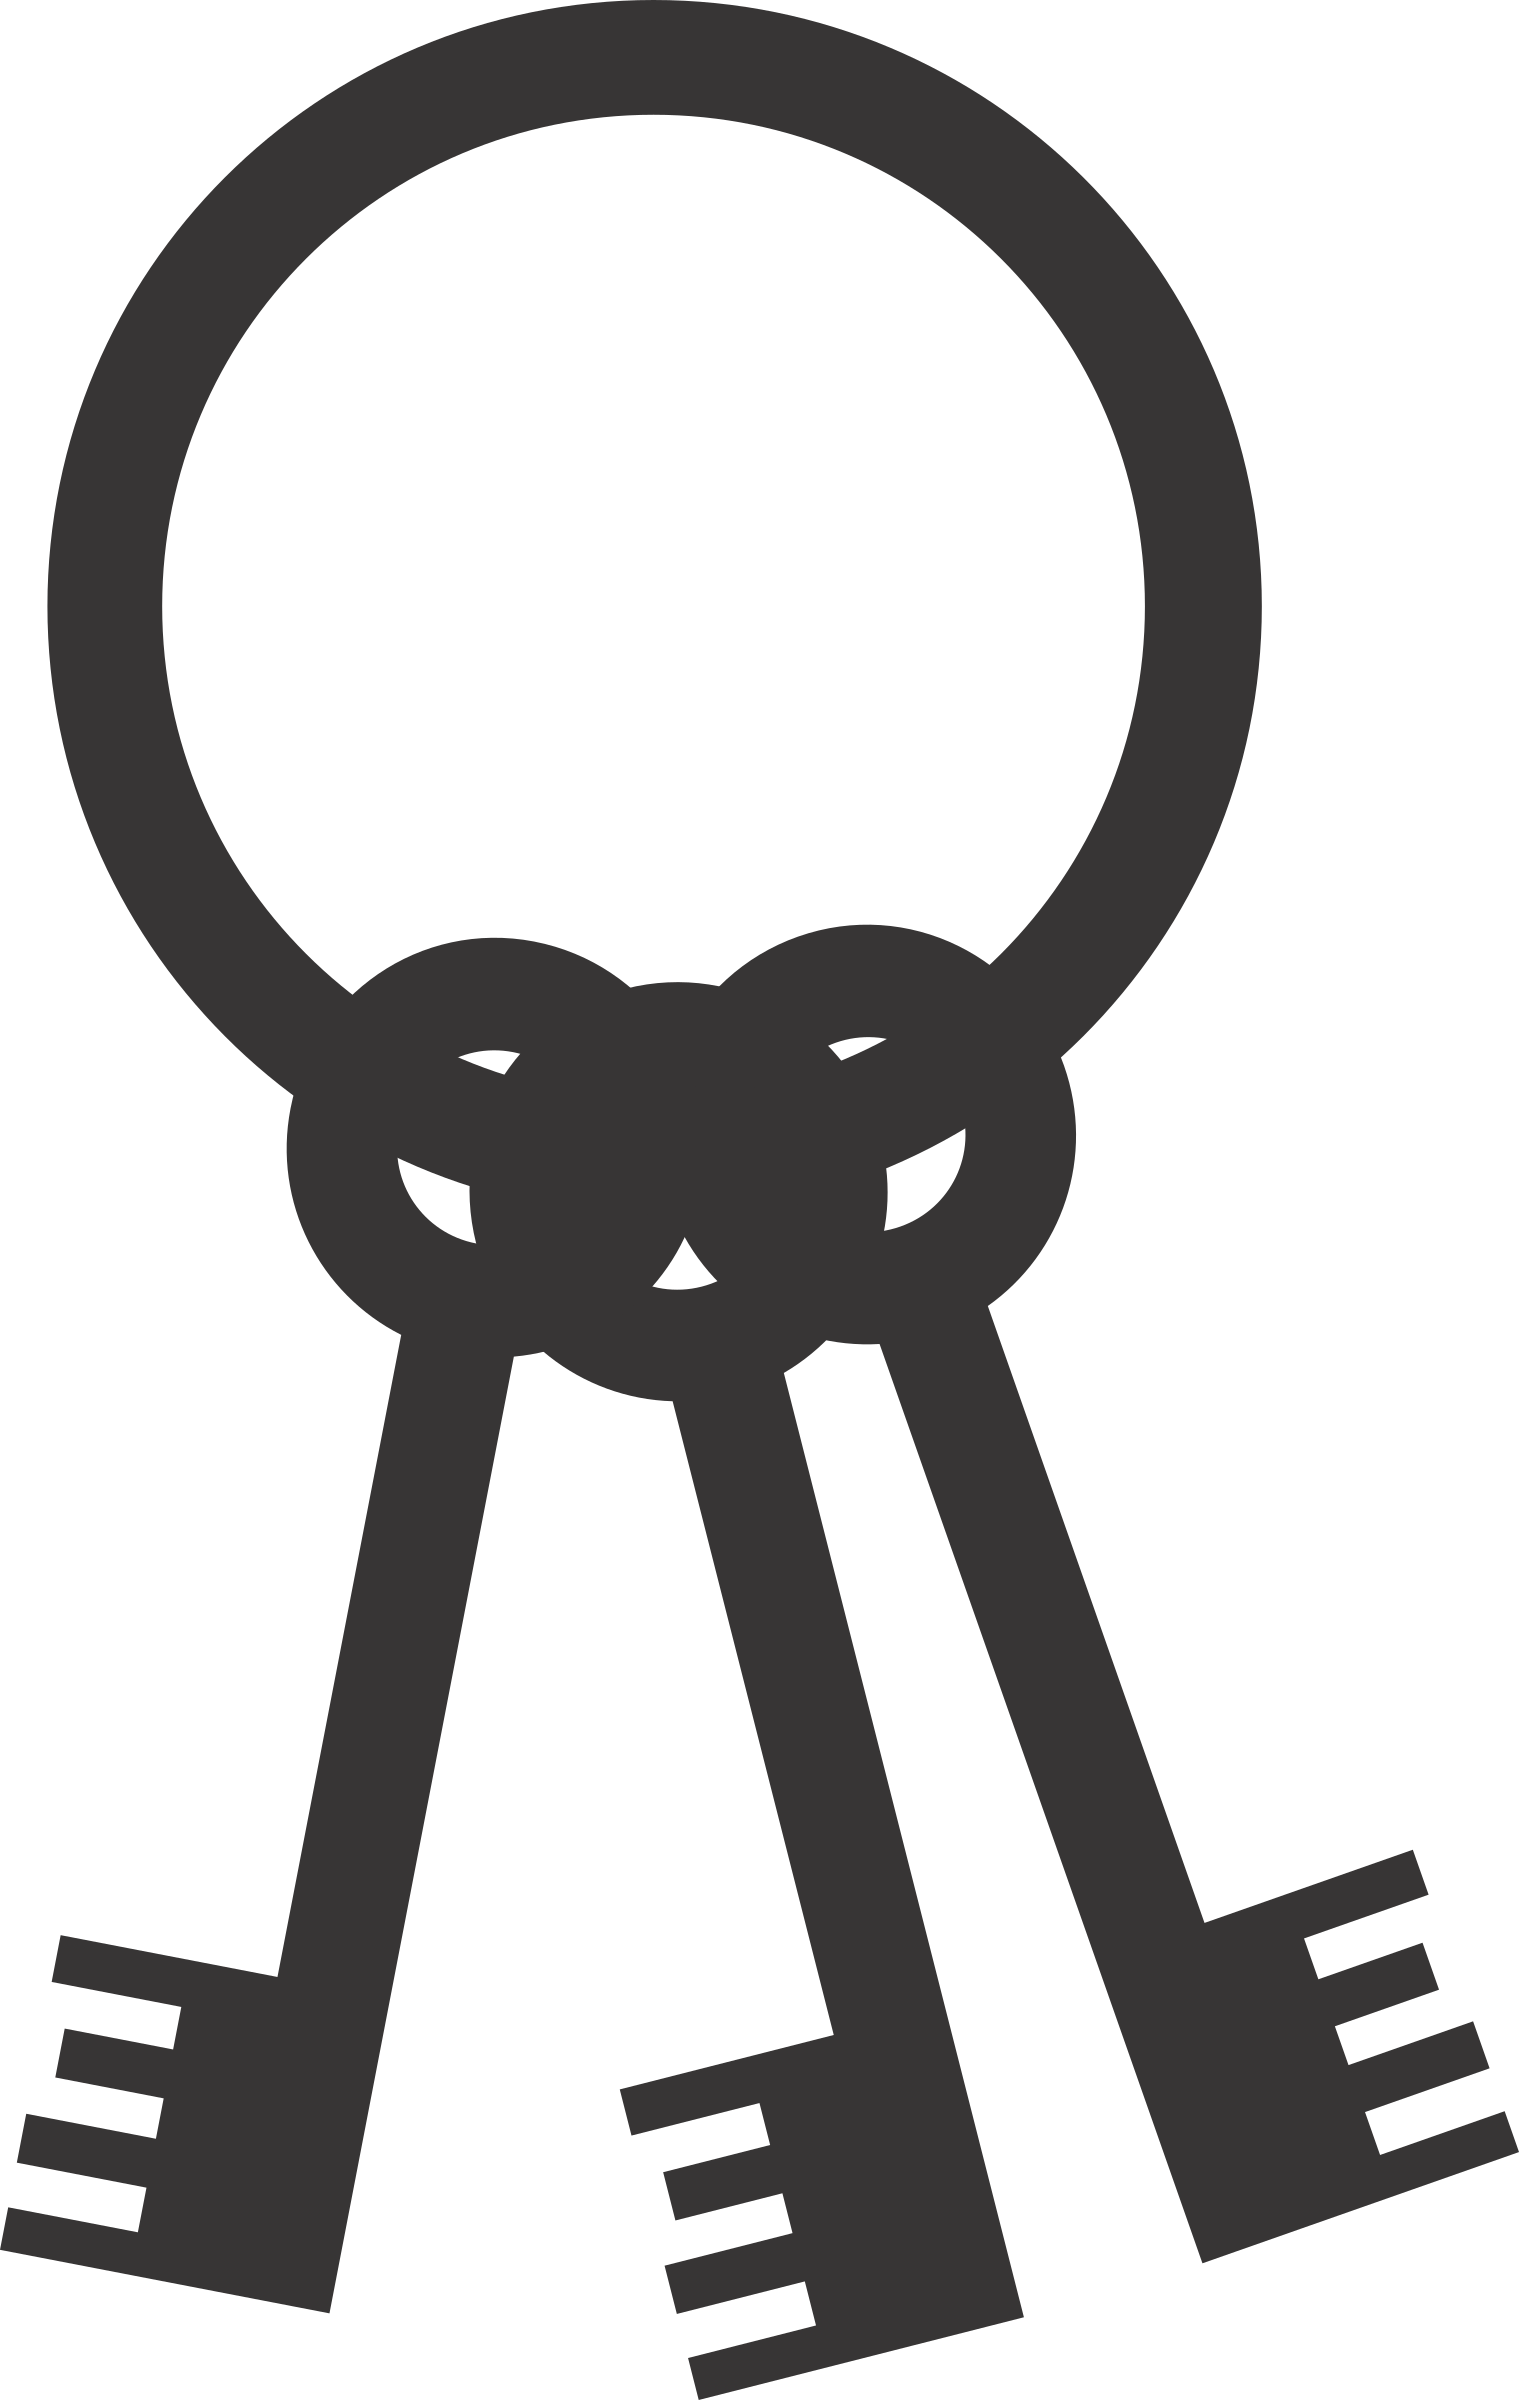 Key keychain